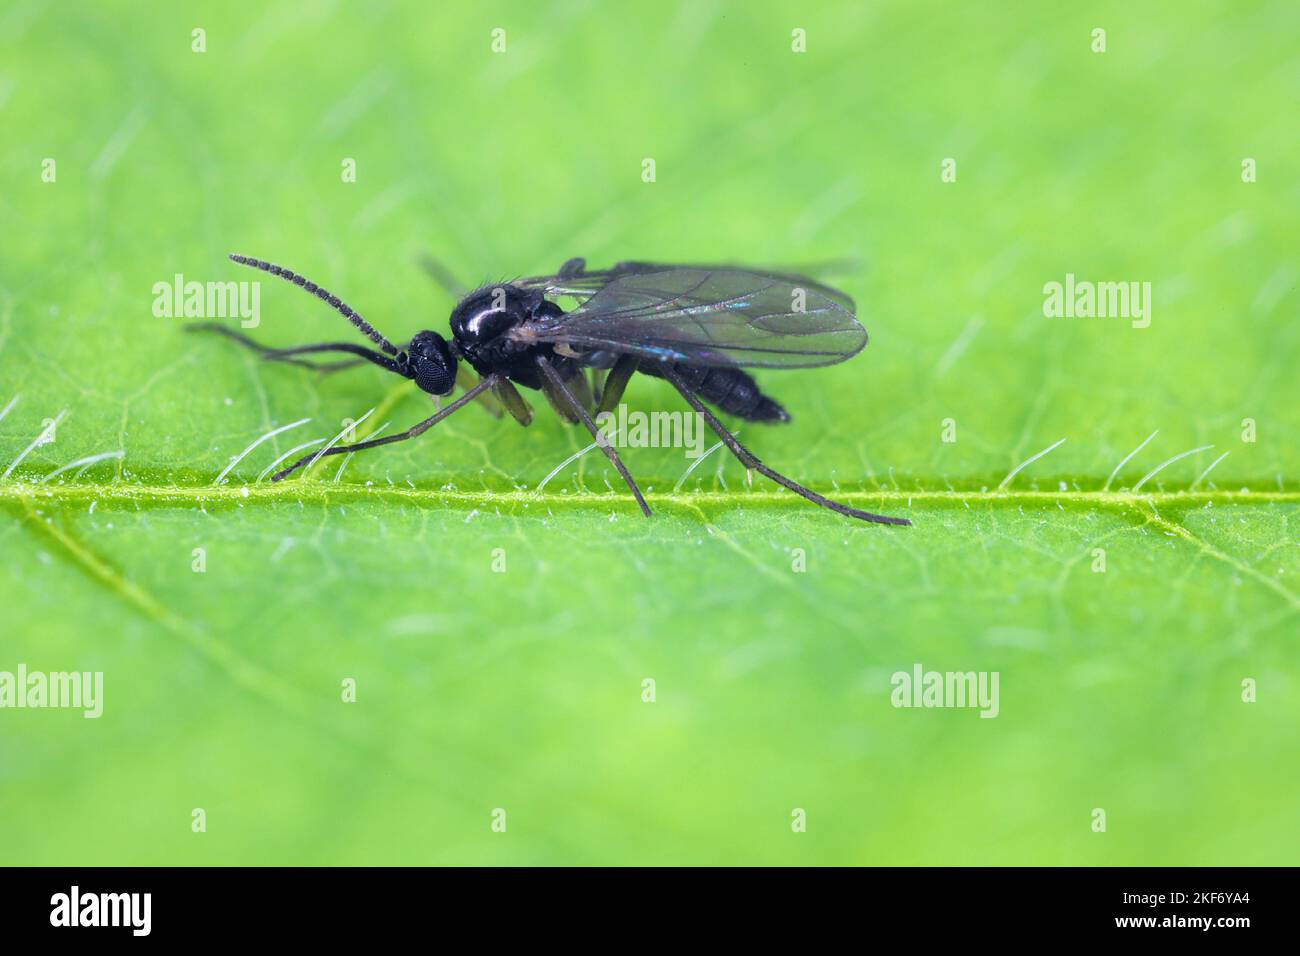 Le champignon à ailes foncées gnat, Sciaridae sur une feuille verte, ces insectes se trouvent souvent à l'intérieur des maisons. Banque D'Images